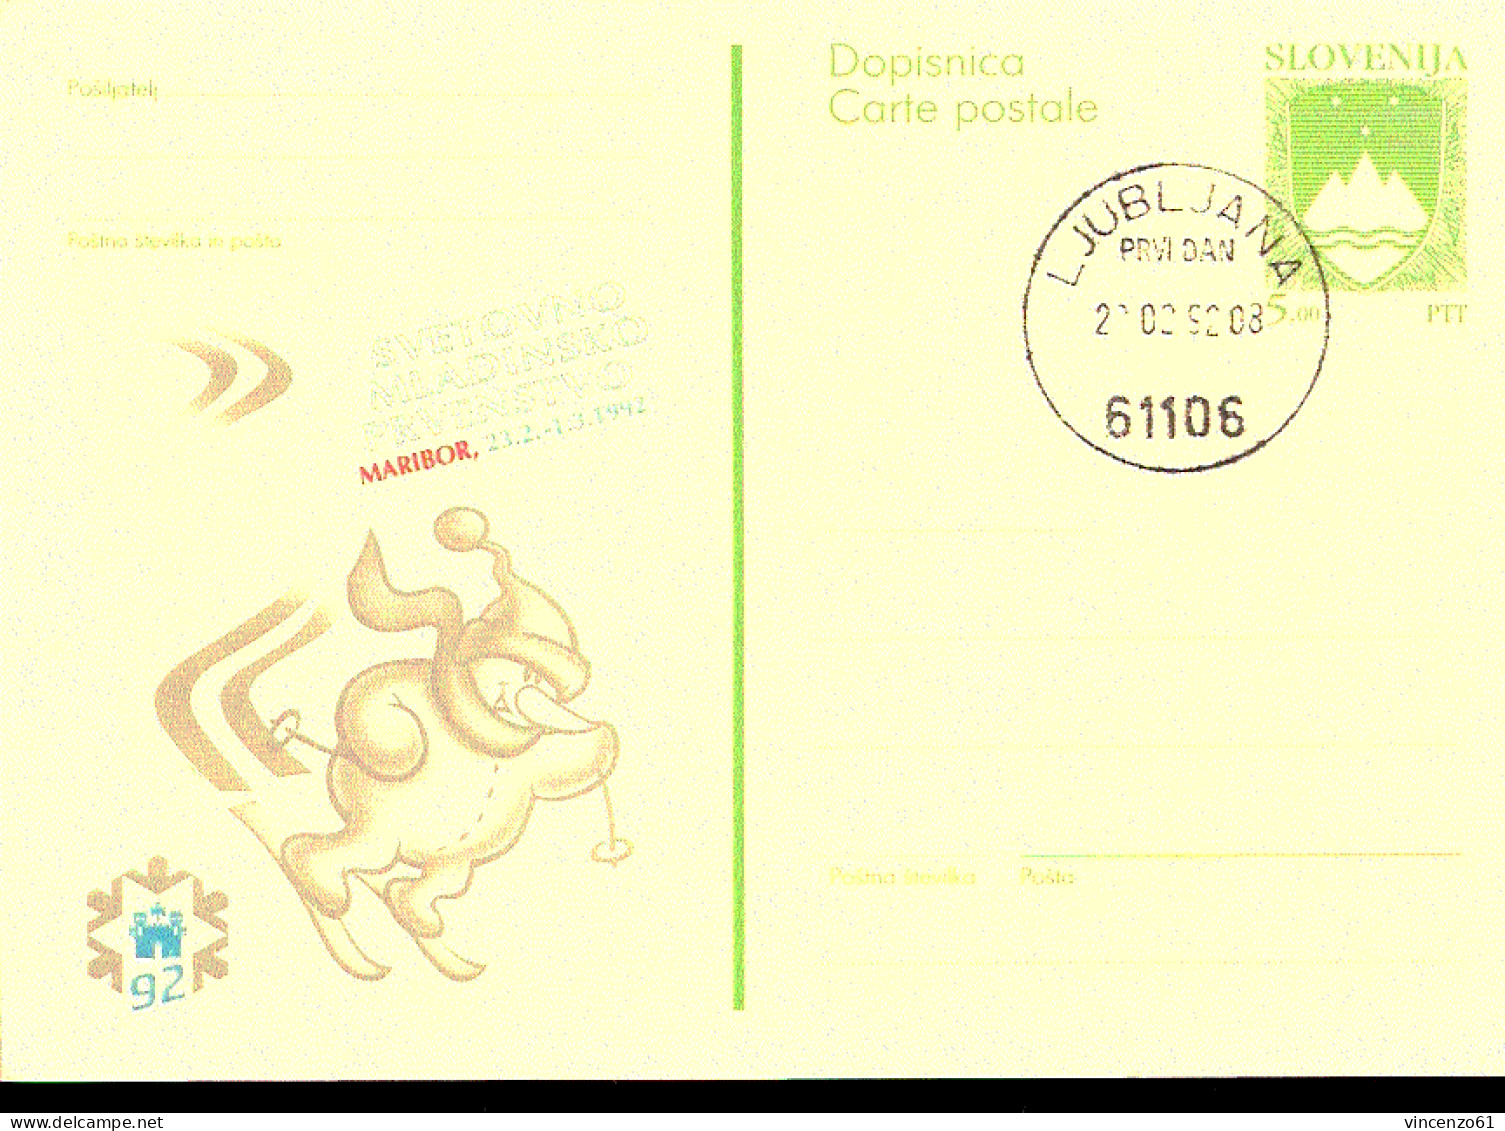 Cartolina Postale Slovenia Con Annullo FDC Per I Mondiali Di Sci Alpino In Slovenia 1992 - Sci